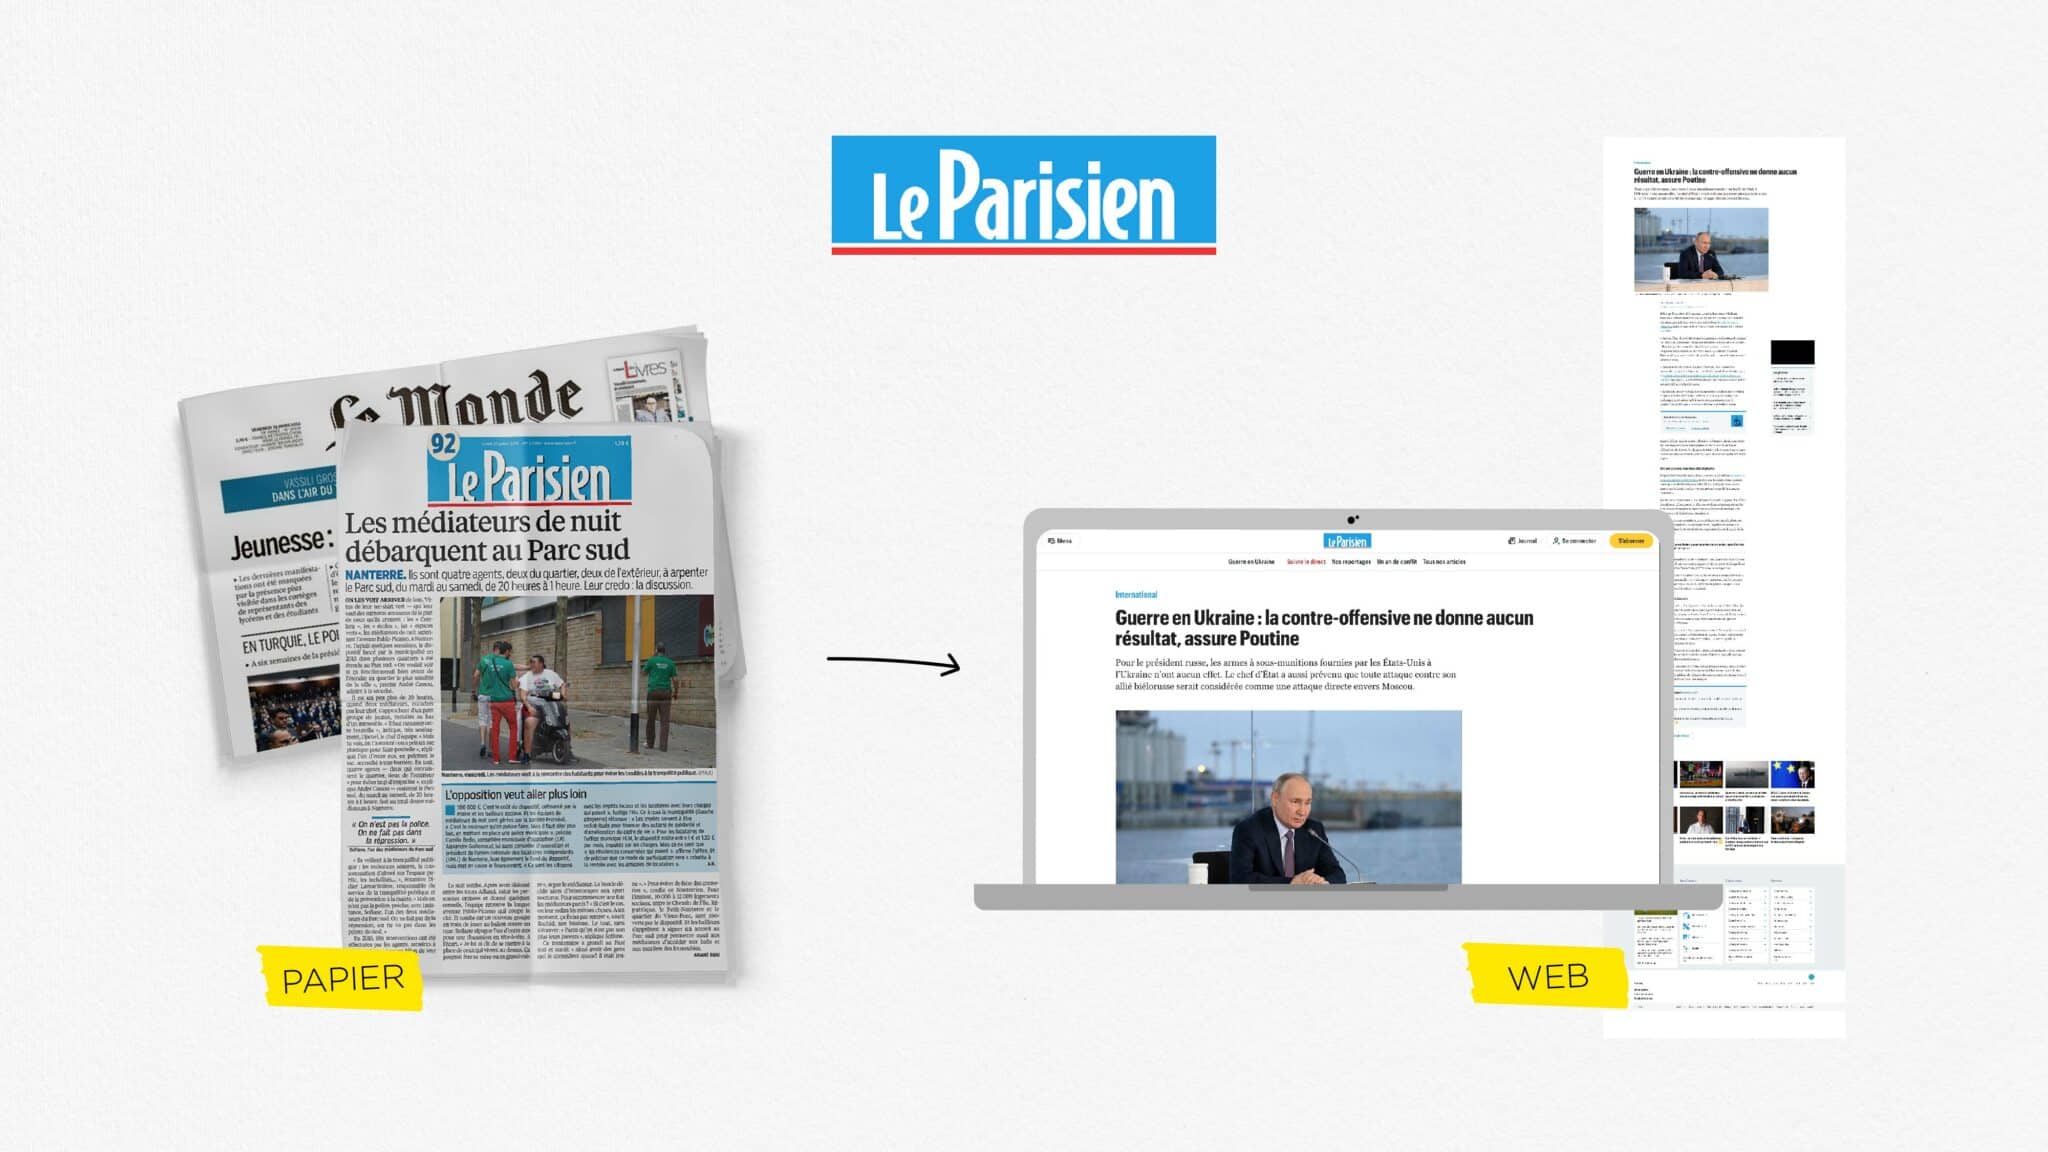 Version papier du journal "Le parisien" et version web de ce même journal : les textes sont ferrés ) gauche sur leur version web